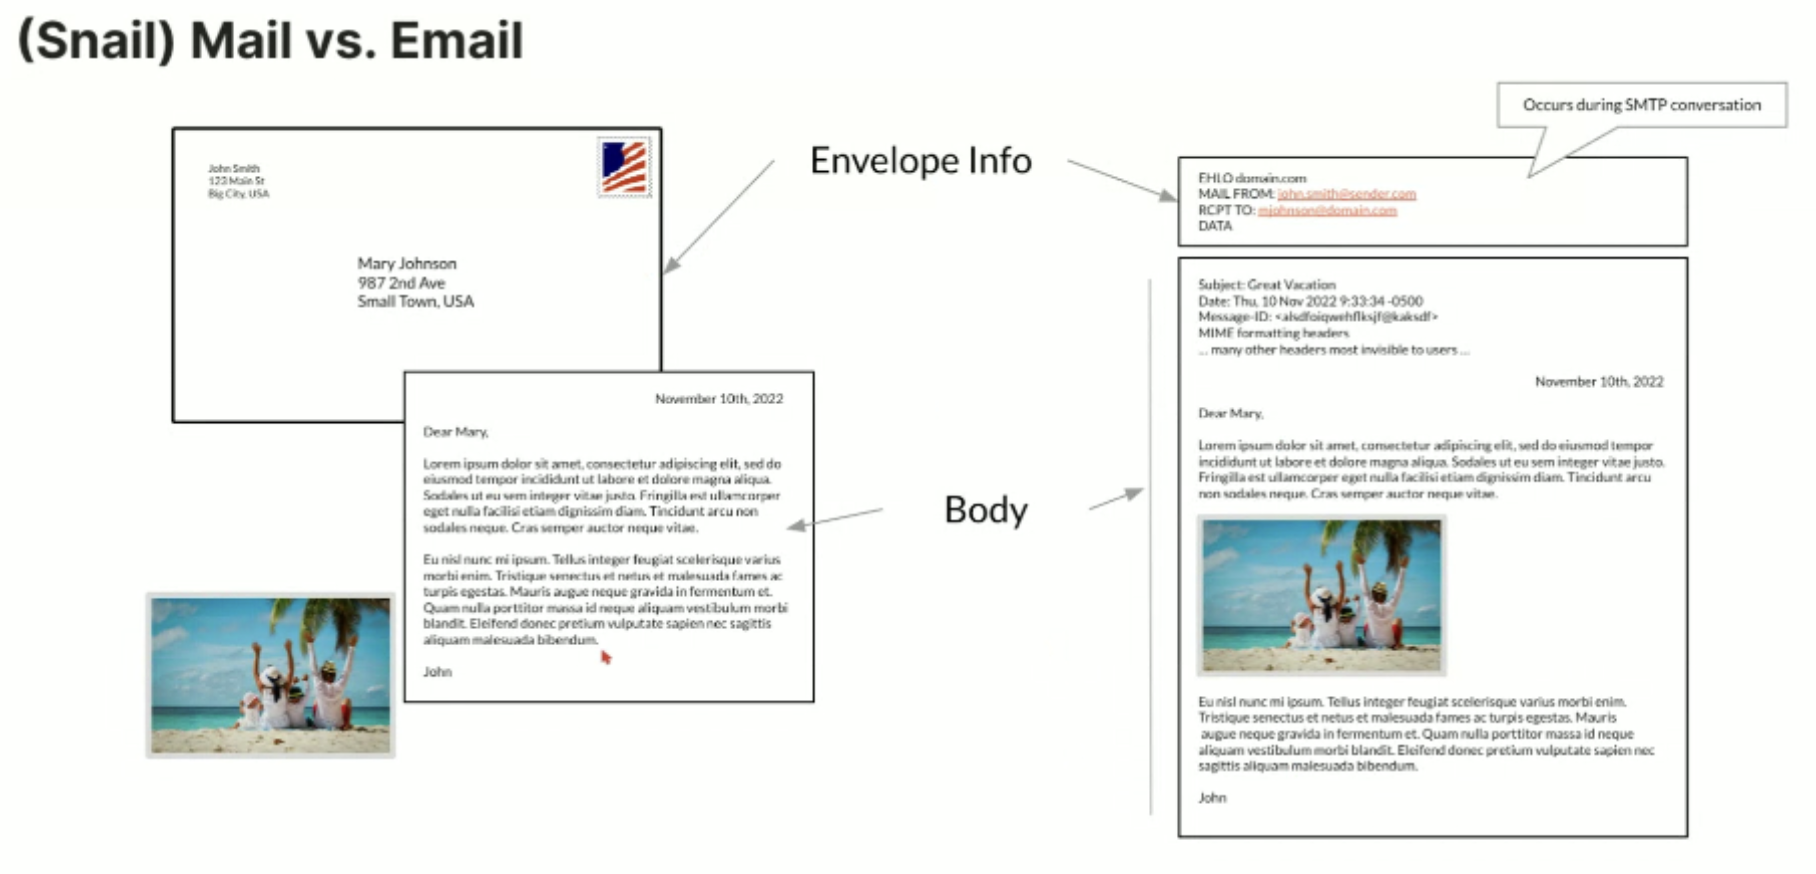 Comparaison entre le courrier postal et le courrier électronique